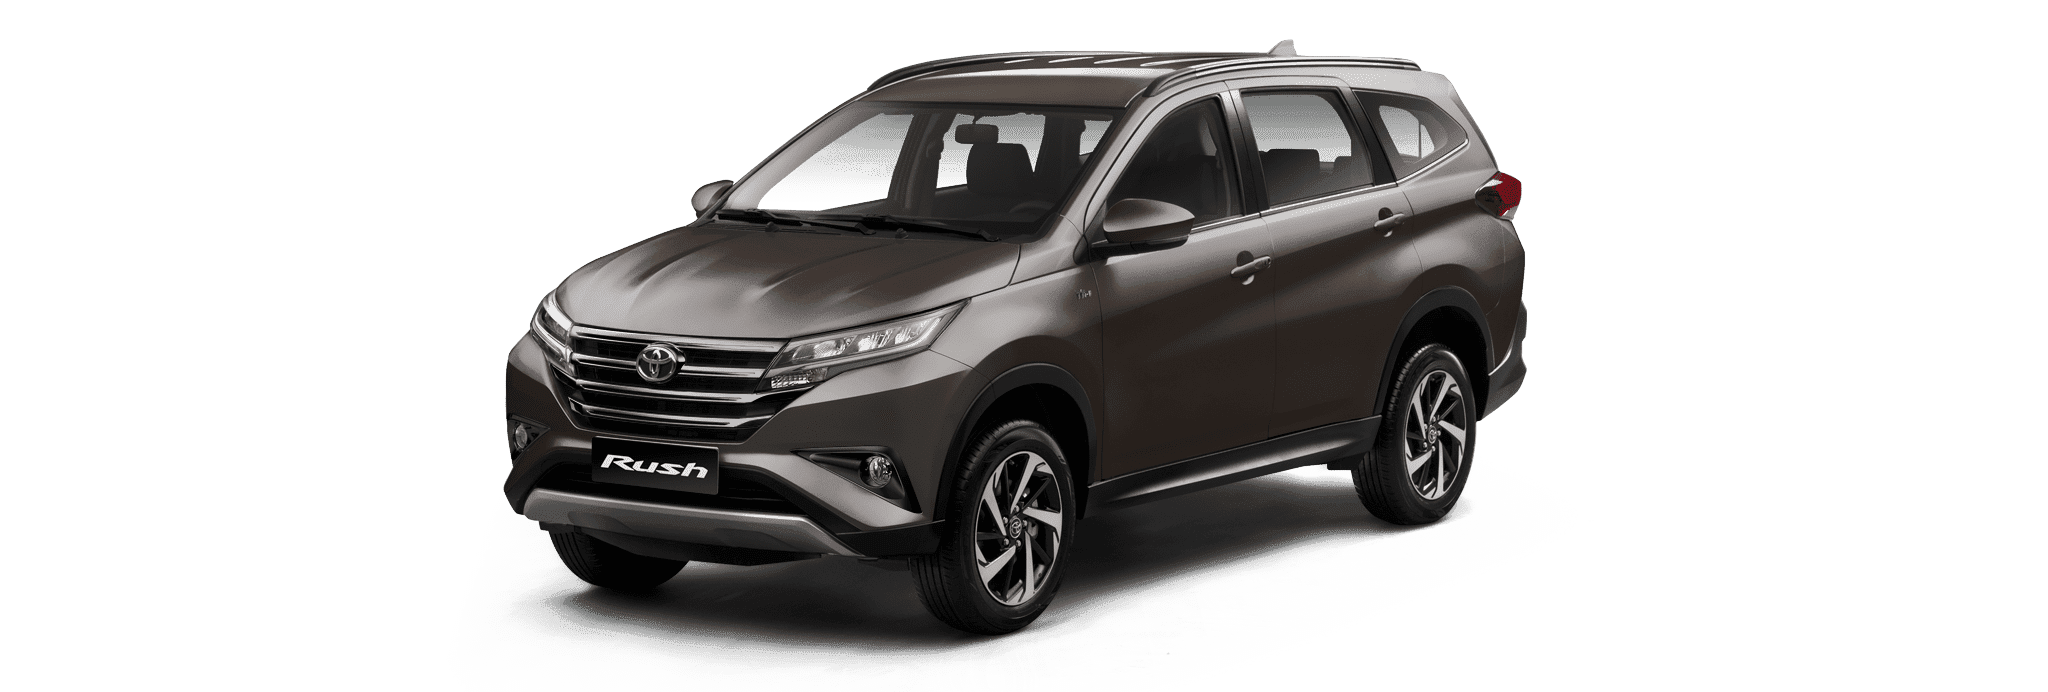 Toyota Rush SUV Bronze 2019